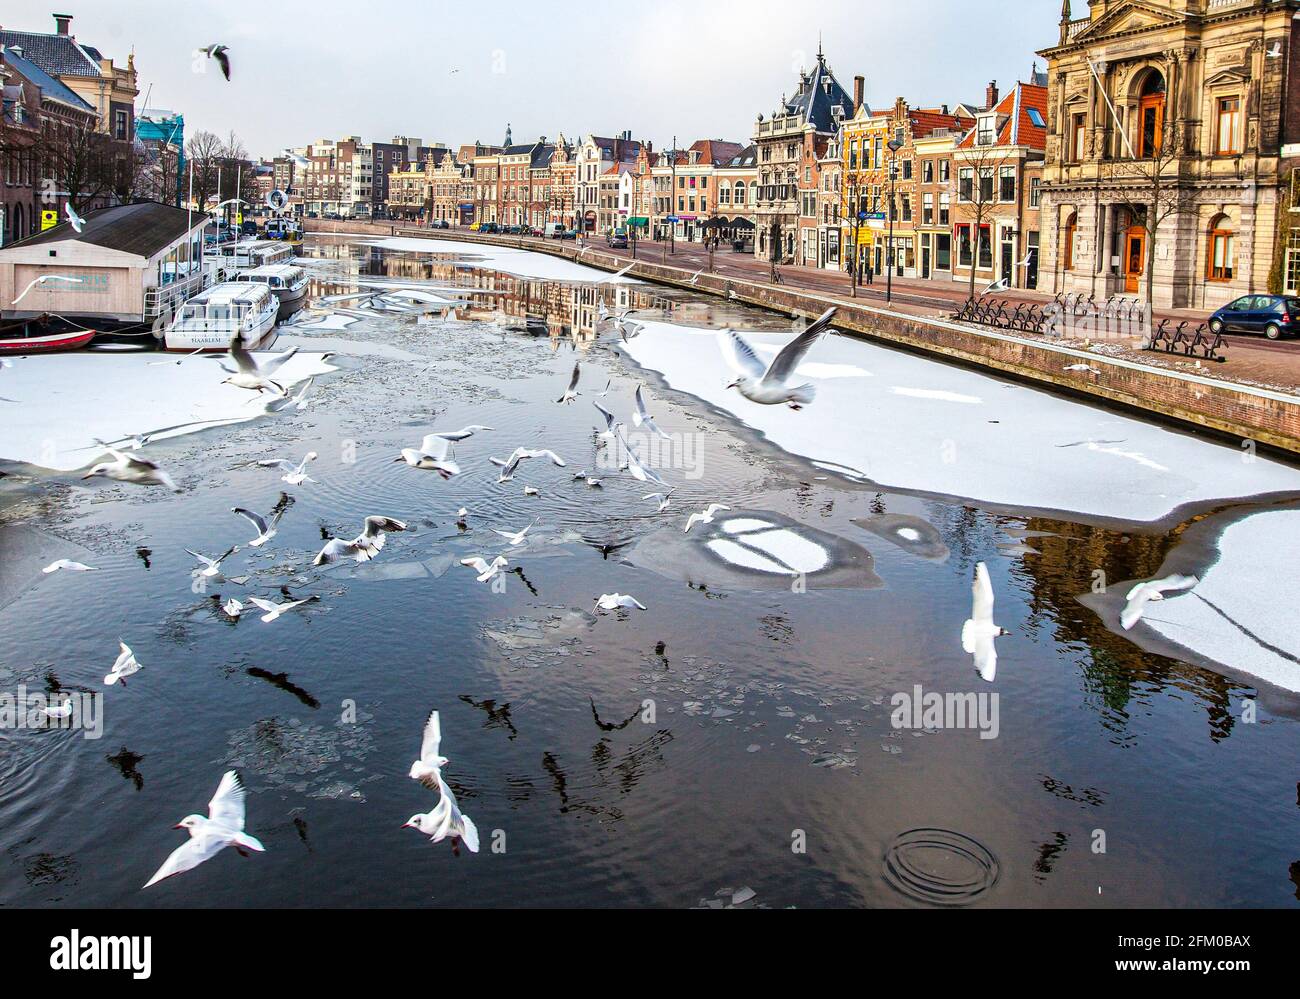 Gabbiani che volano sul canale Spaarne con case tradizionali sul lungofiume, Haarlem, Amsterdam, Olanda del Nord, Paesi Bassi Foto Stock